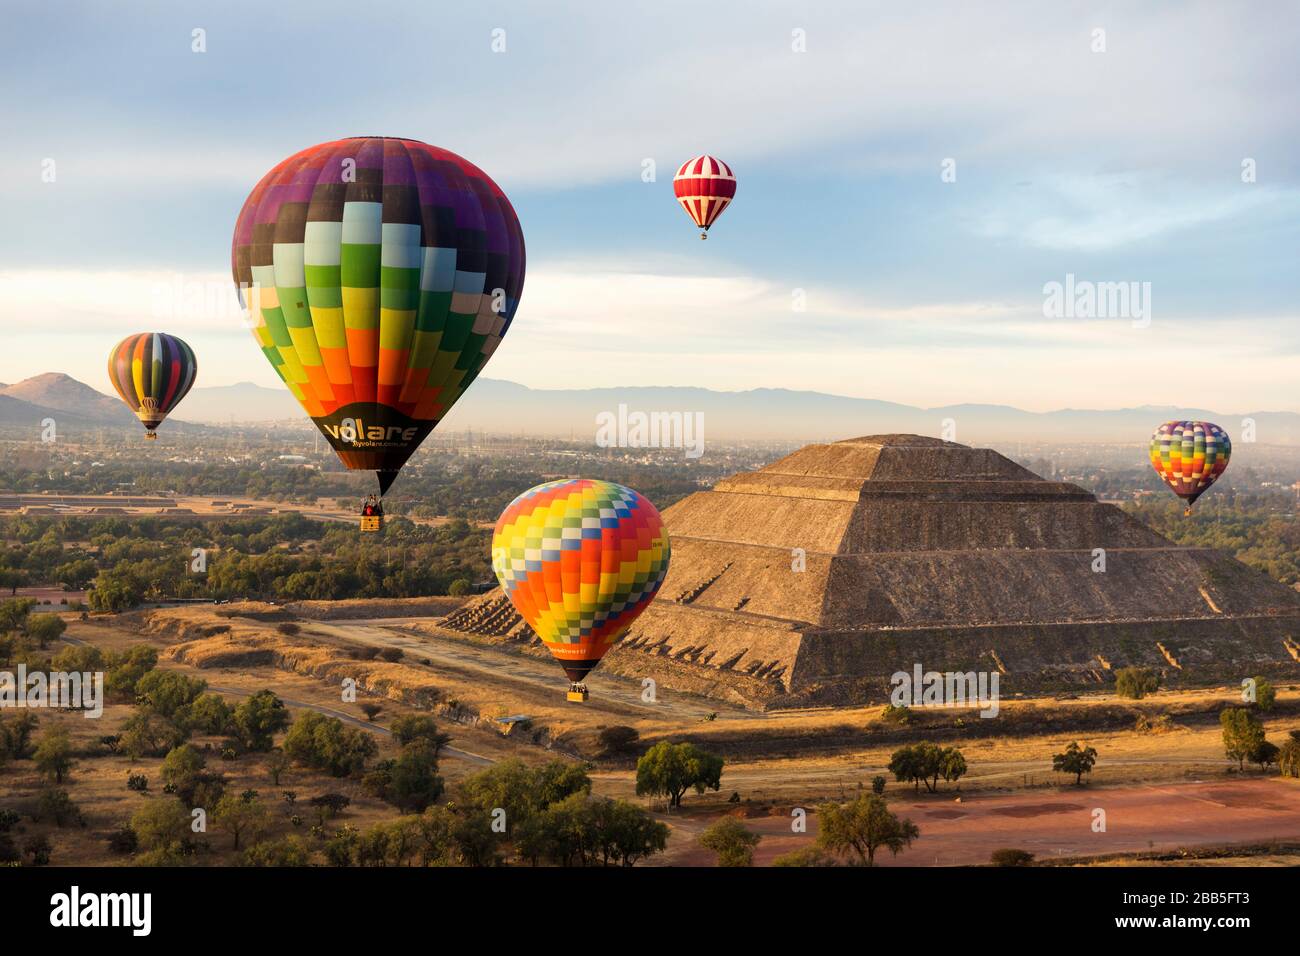 Mexique, Mexico, Teotihuacán zone archéologique, le plus grand empire préhispanique du Mexique. Ballons d'air chaud au lever du soleil sur le Pyrámide del sol Banque D'Images